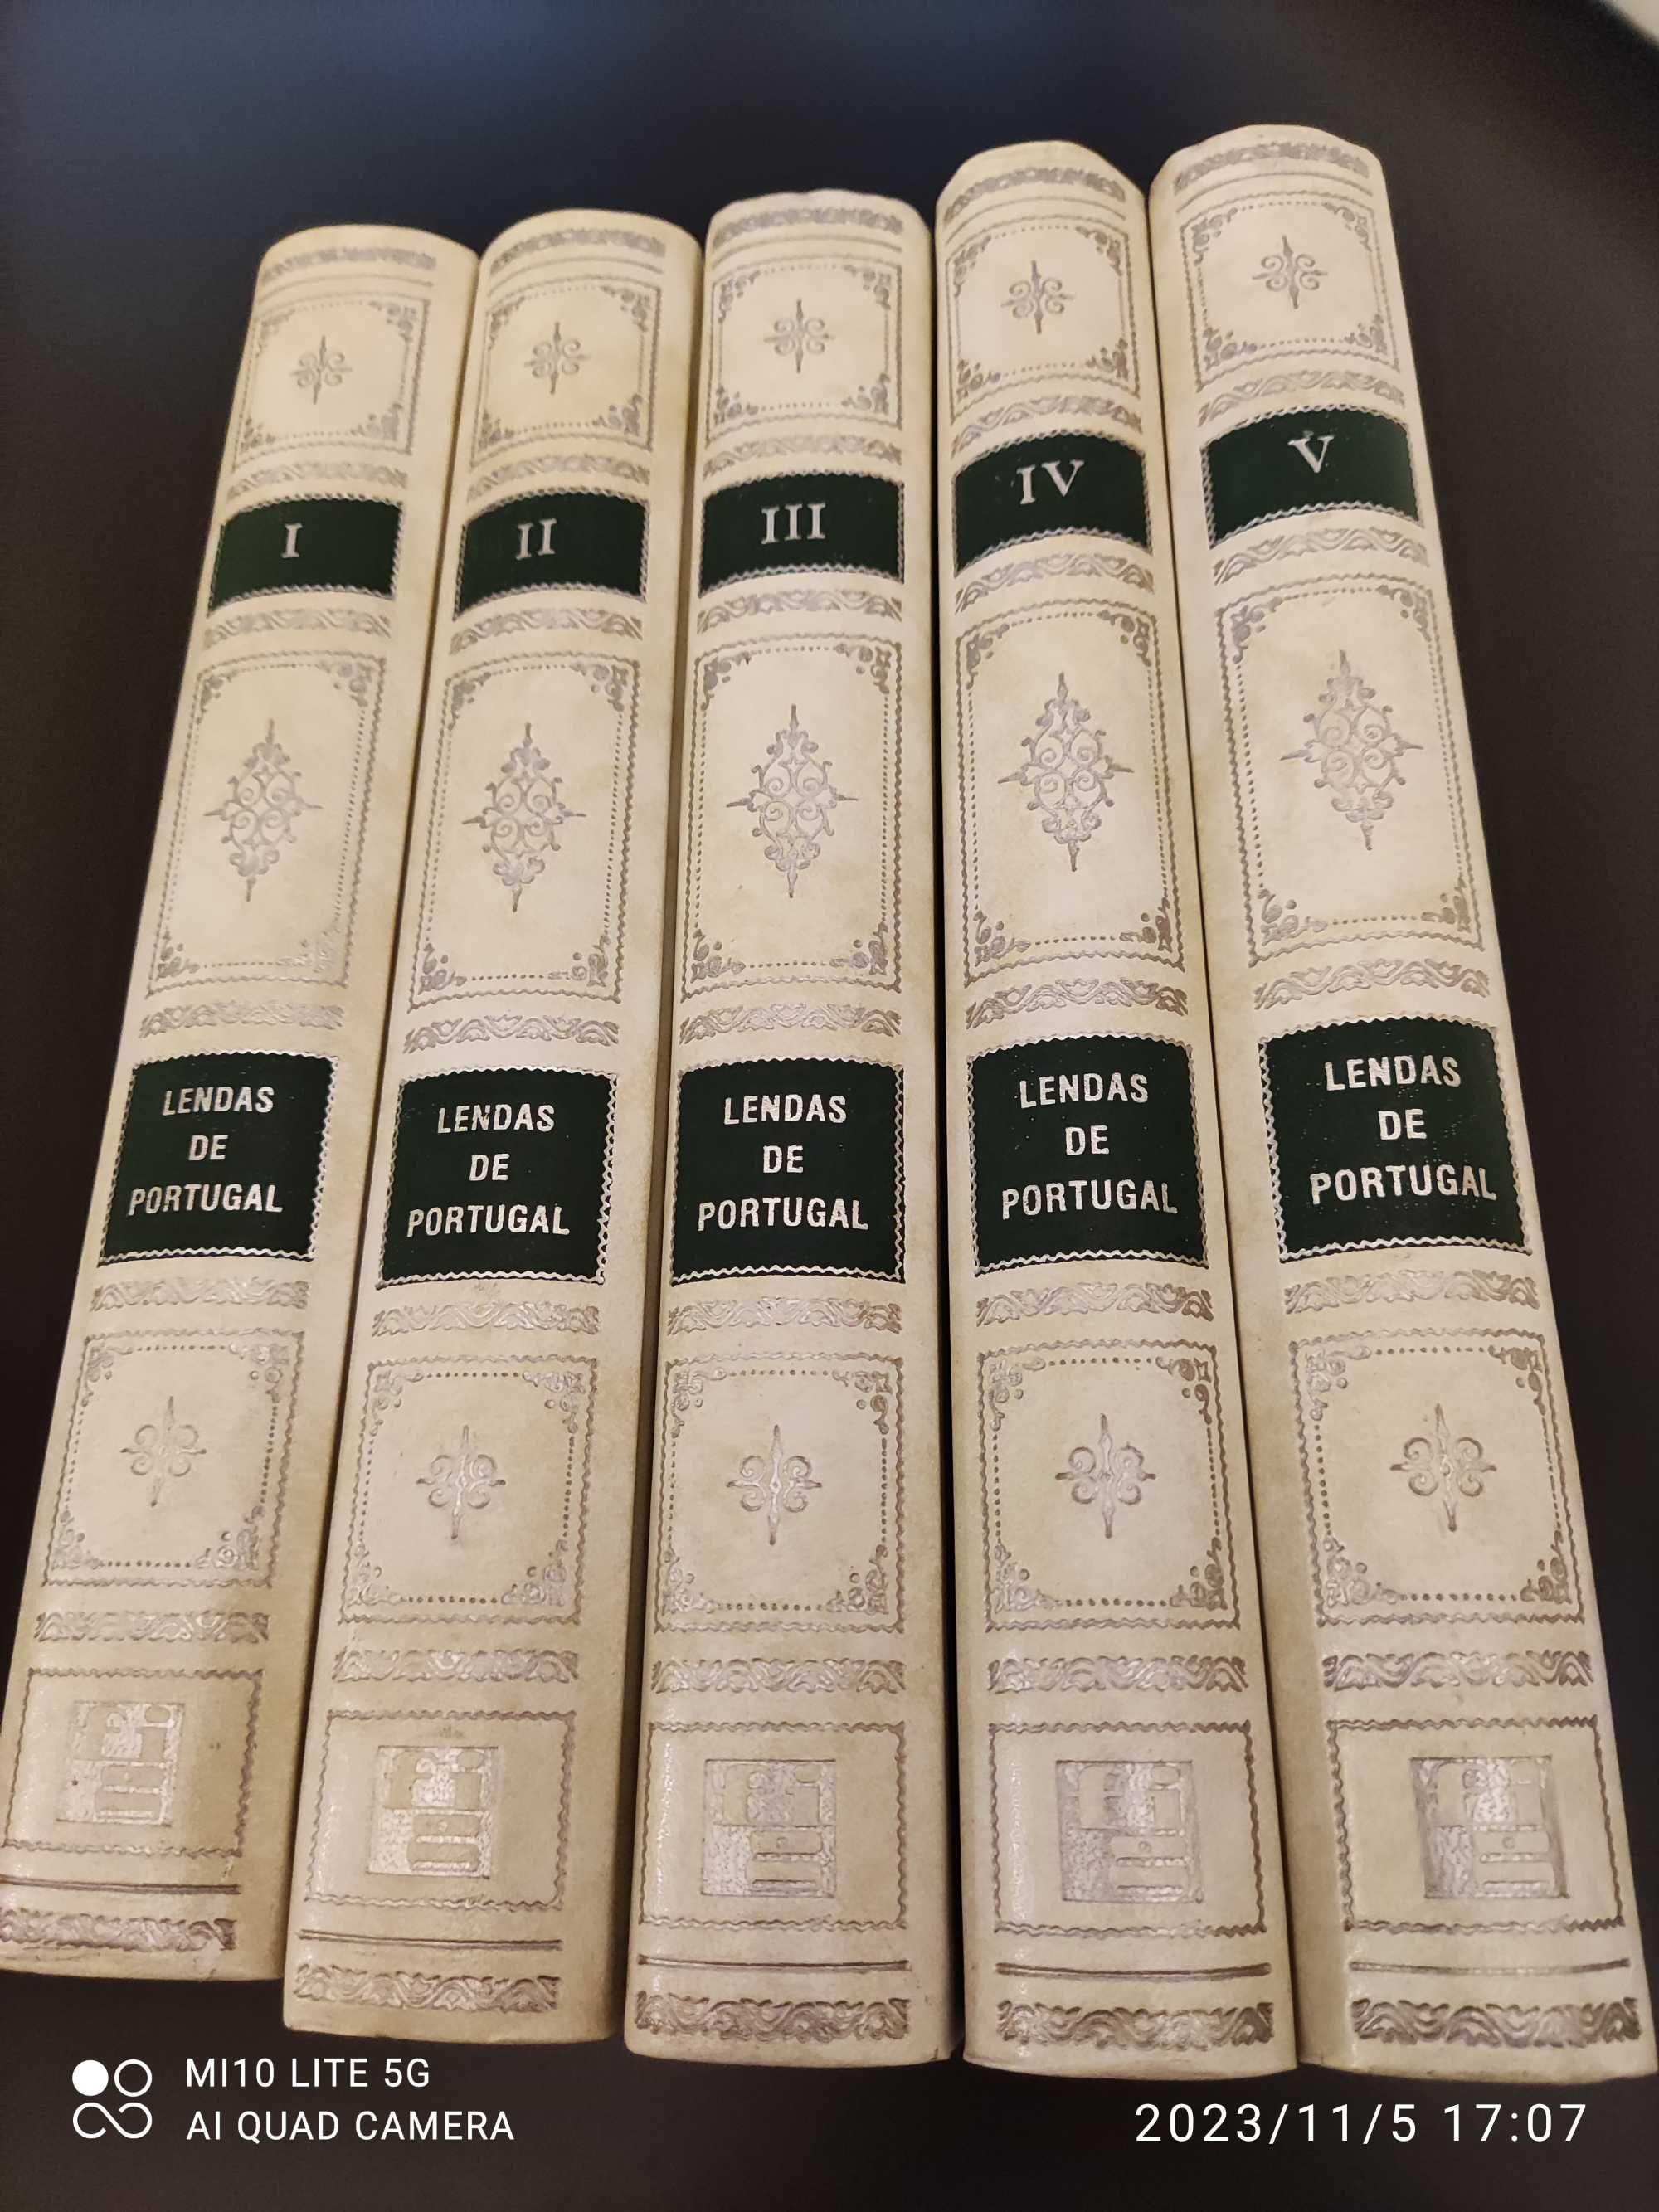 Lendas de Portugal, de Gentil Marques, 5 vol. - 1ª. ed. de 1962 a 1966